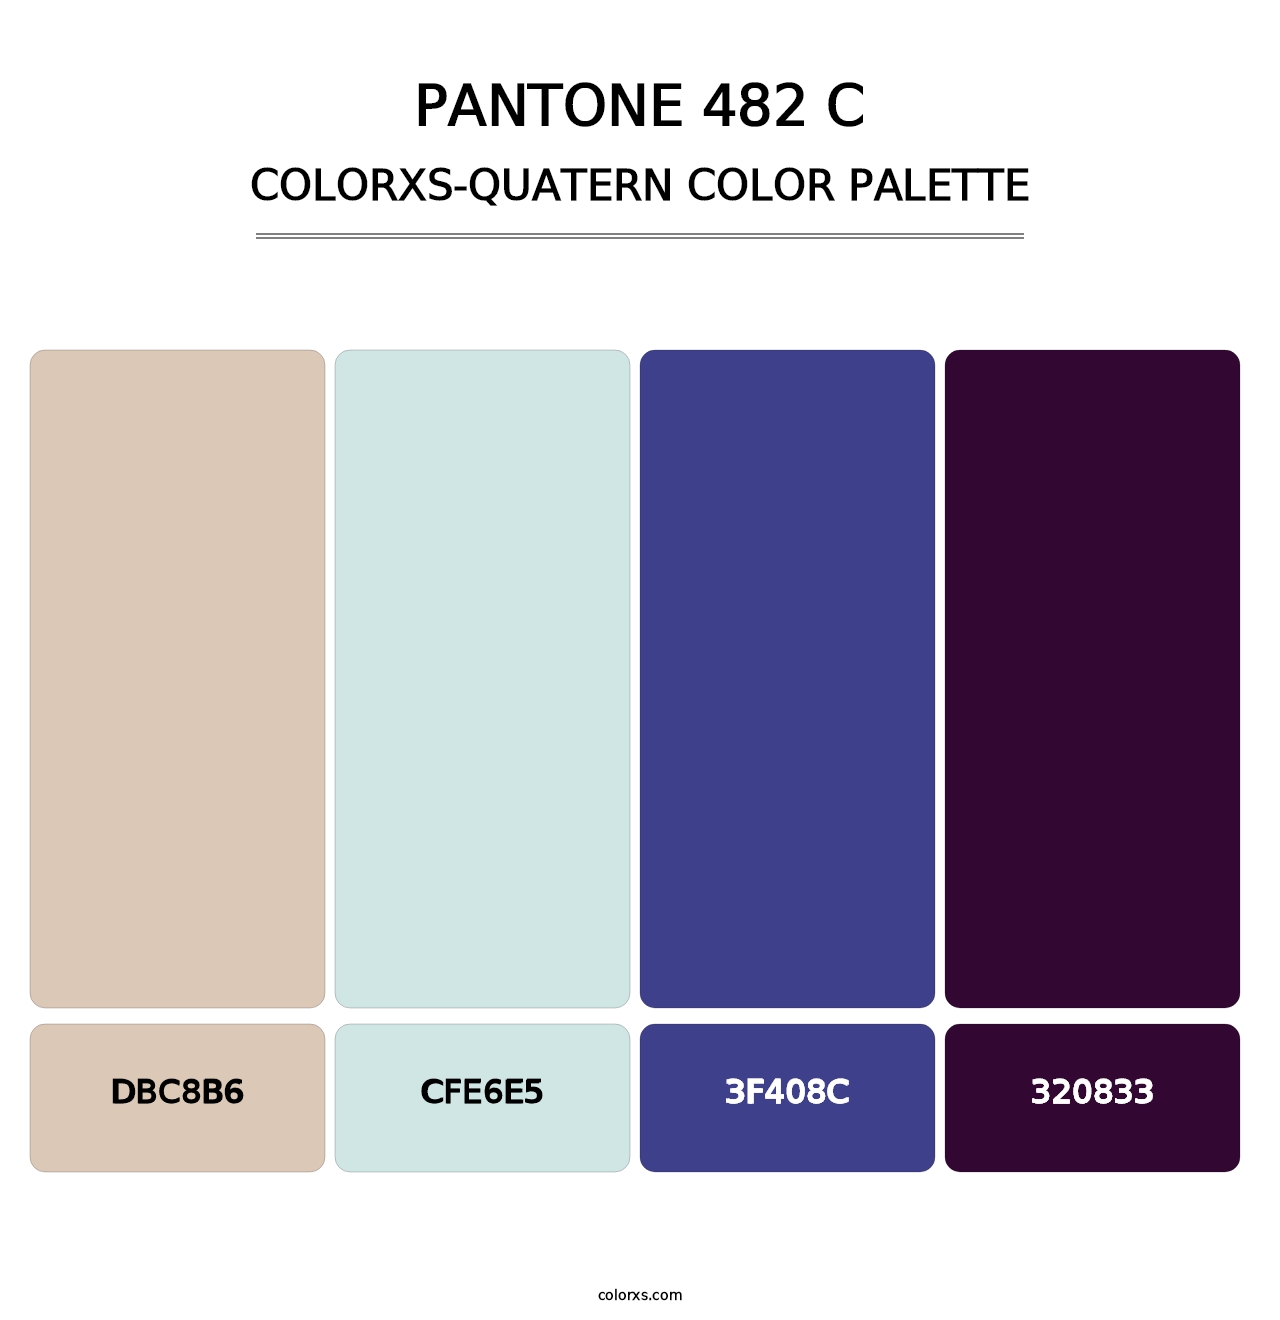 PANTONE 482 C - Colorxs Quatern Palette